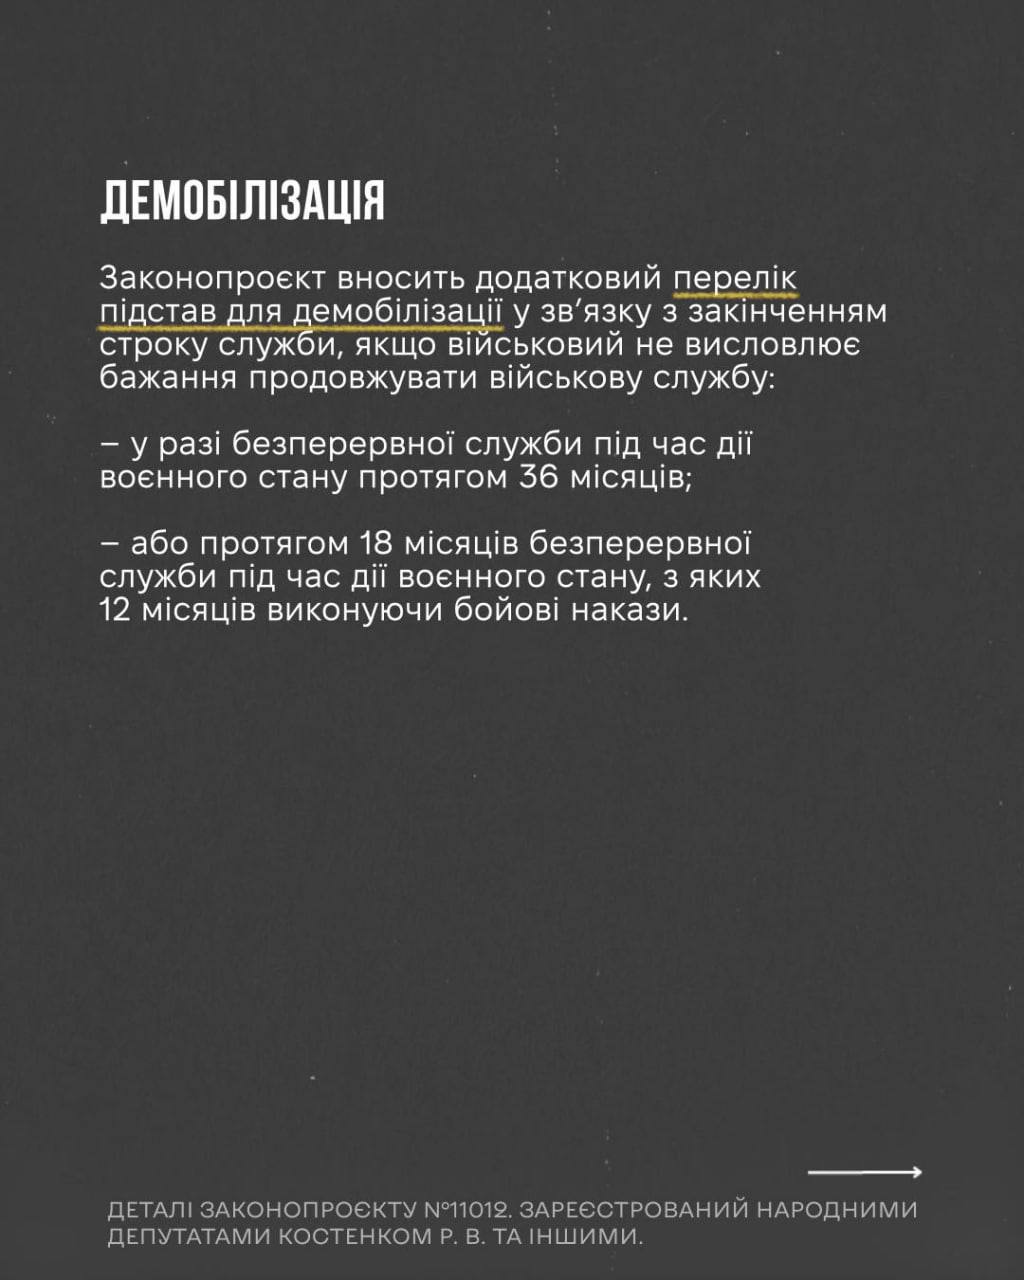 Снимок законопроекта на rada.gov.ua (с.9)